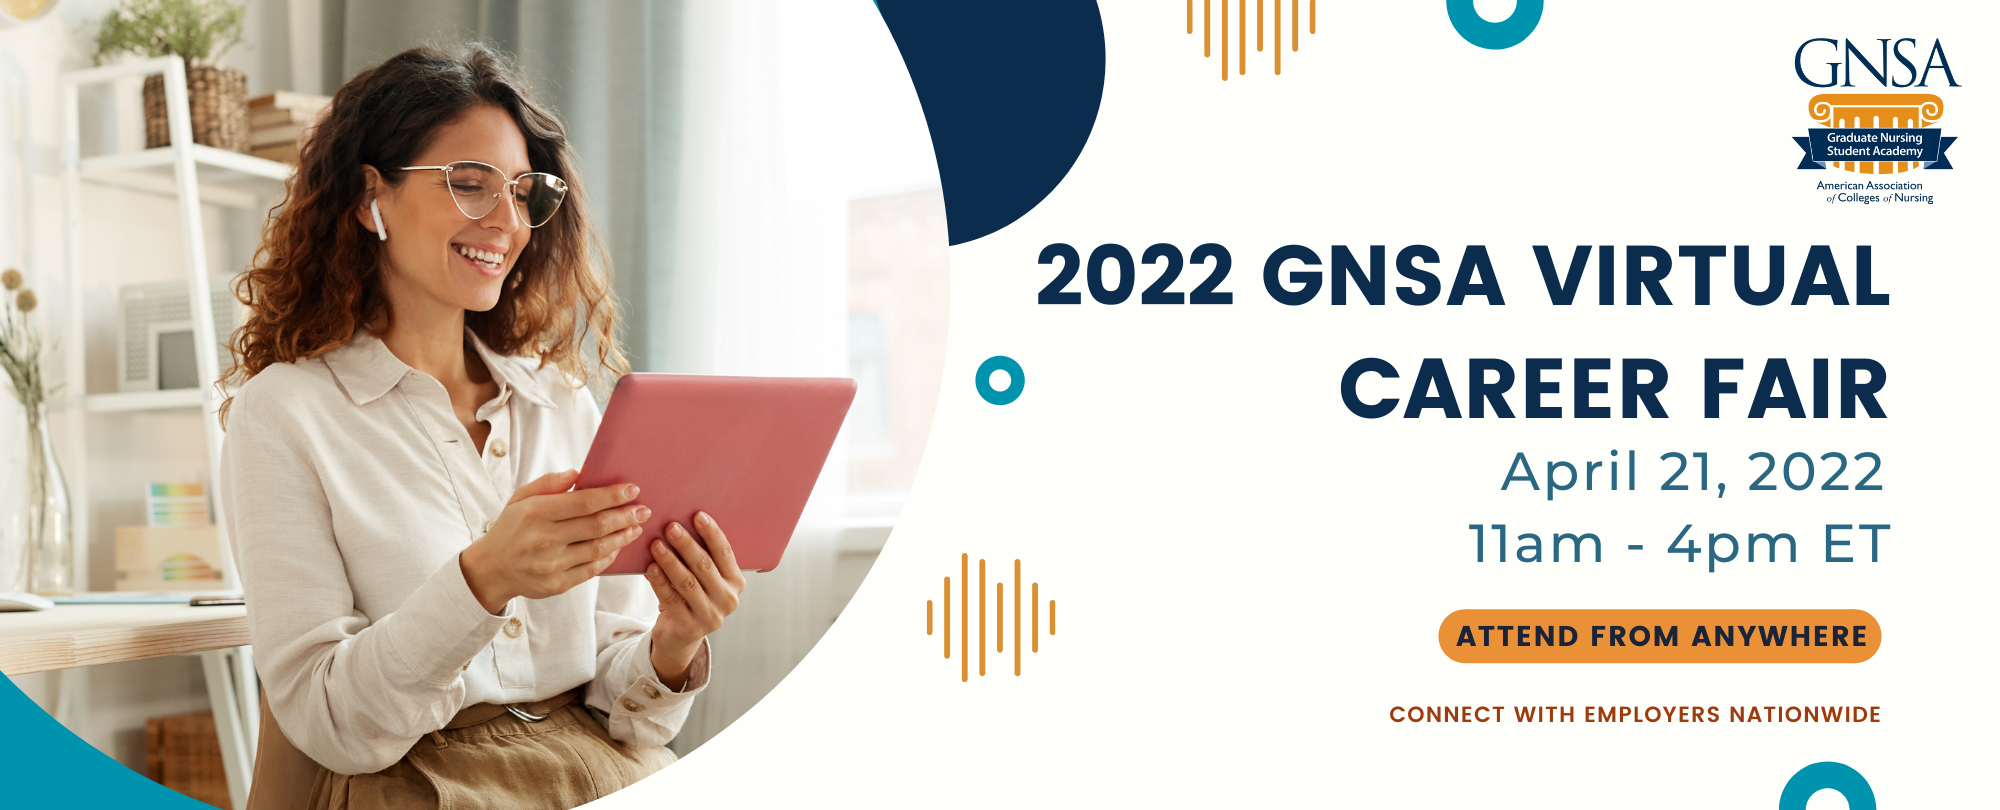 2022 GNSA虛擬職業博覽會|2022年4月21日|美國東部時間上午11點至下午4點|從任何地方參加|與全國雇主建立聯係